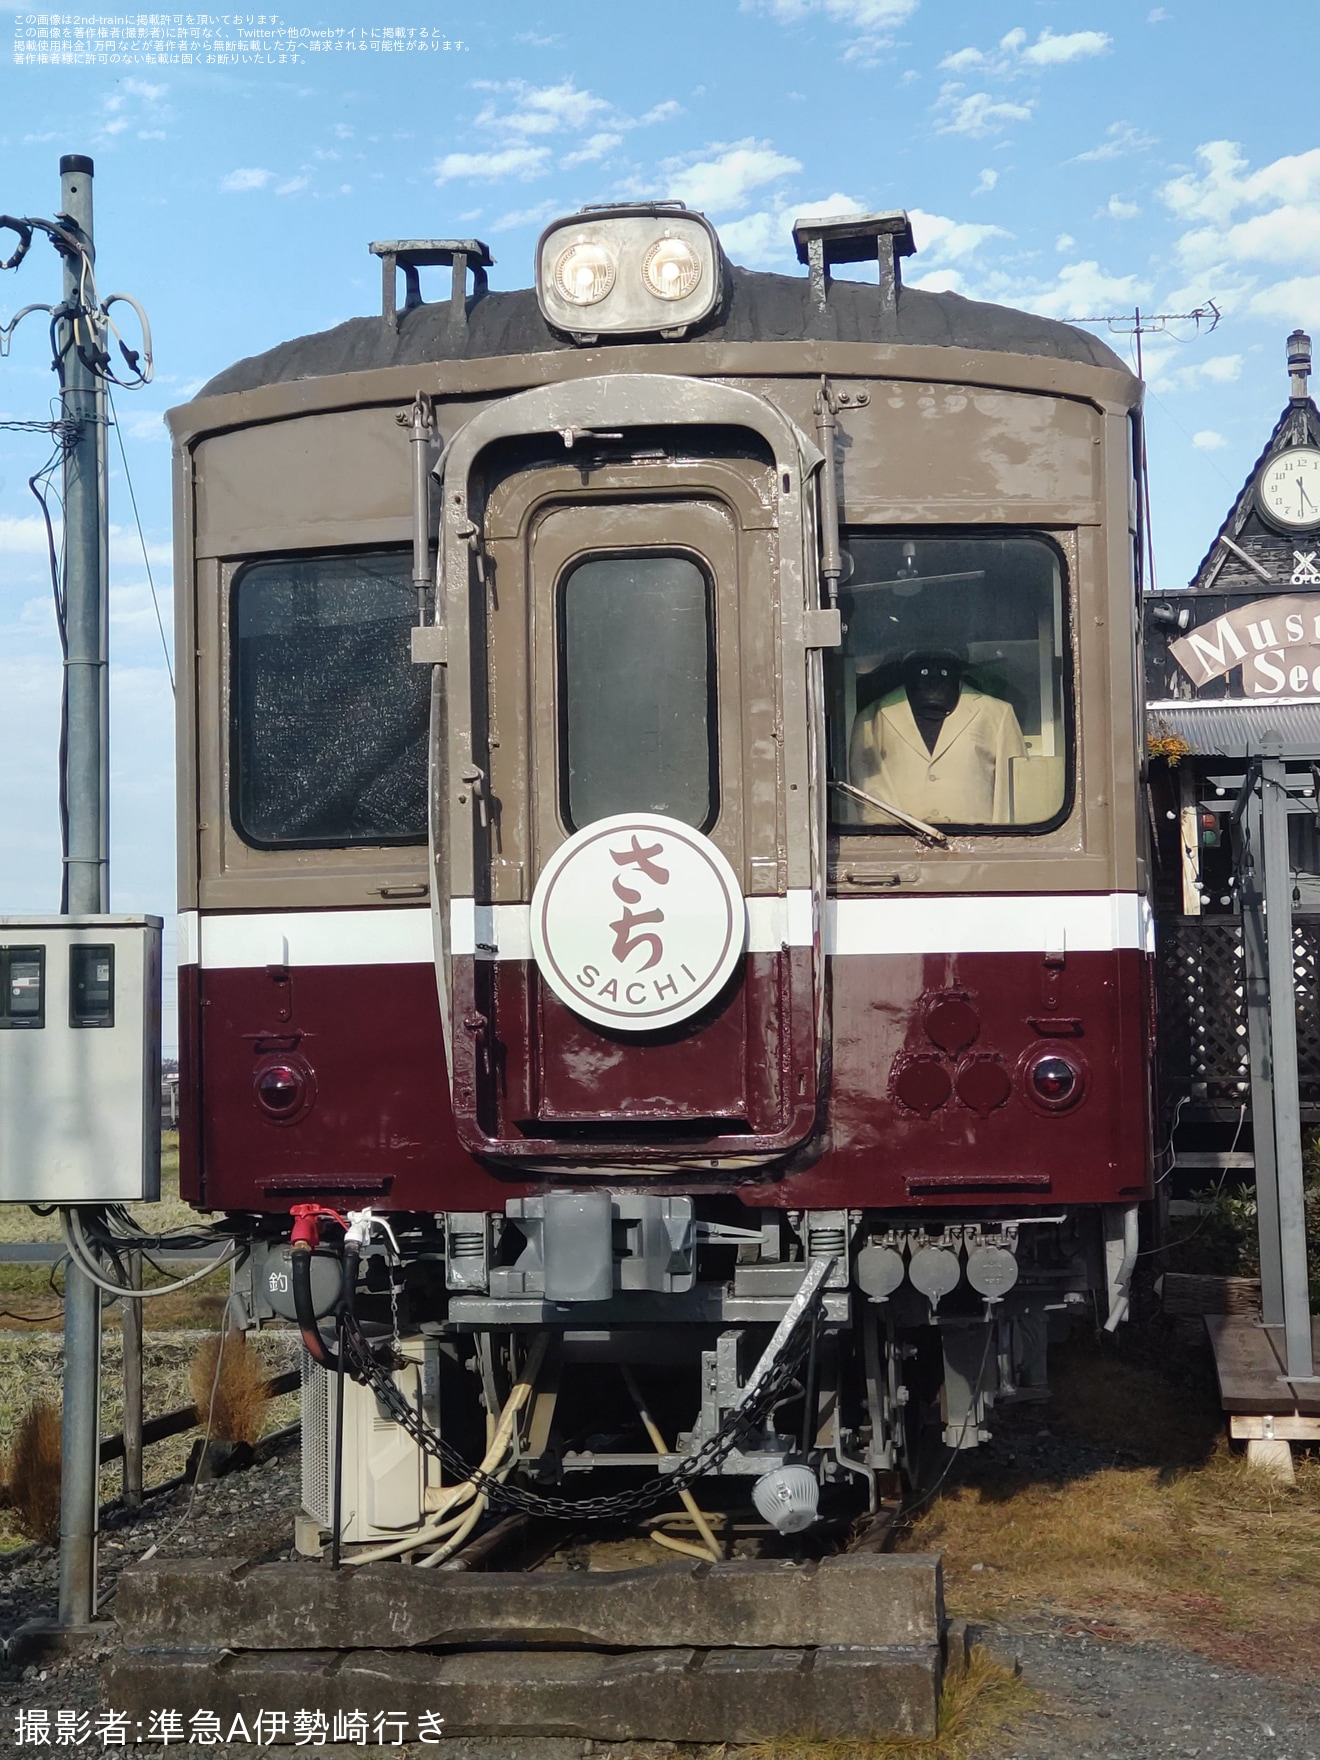 【東武】「レストランマスタードシード」で「電車まつり」が開催の拡大写真